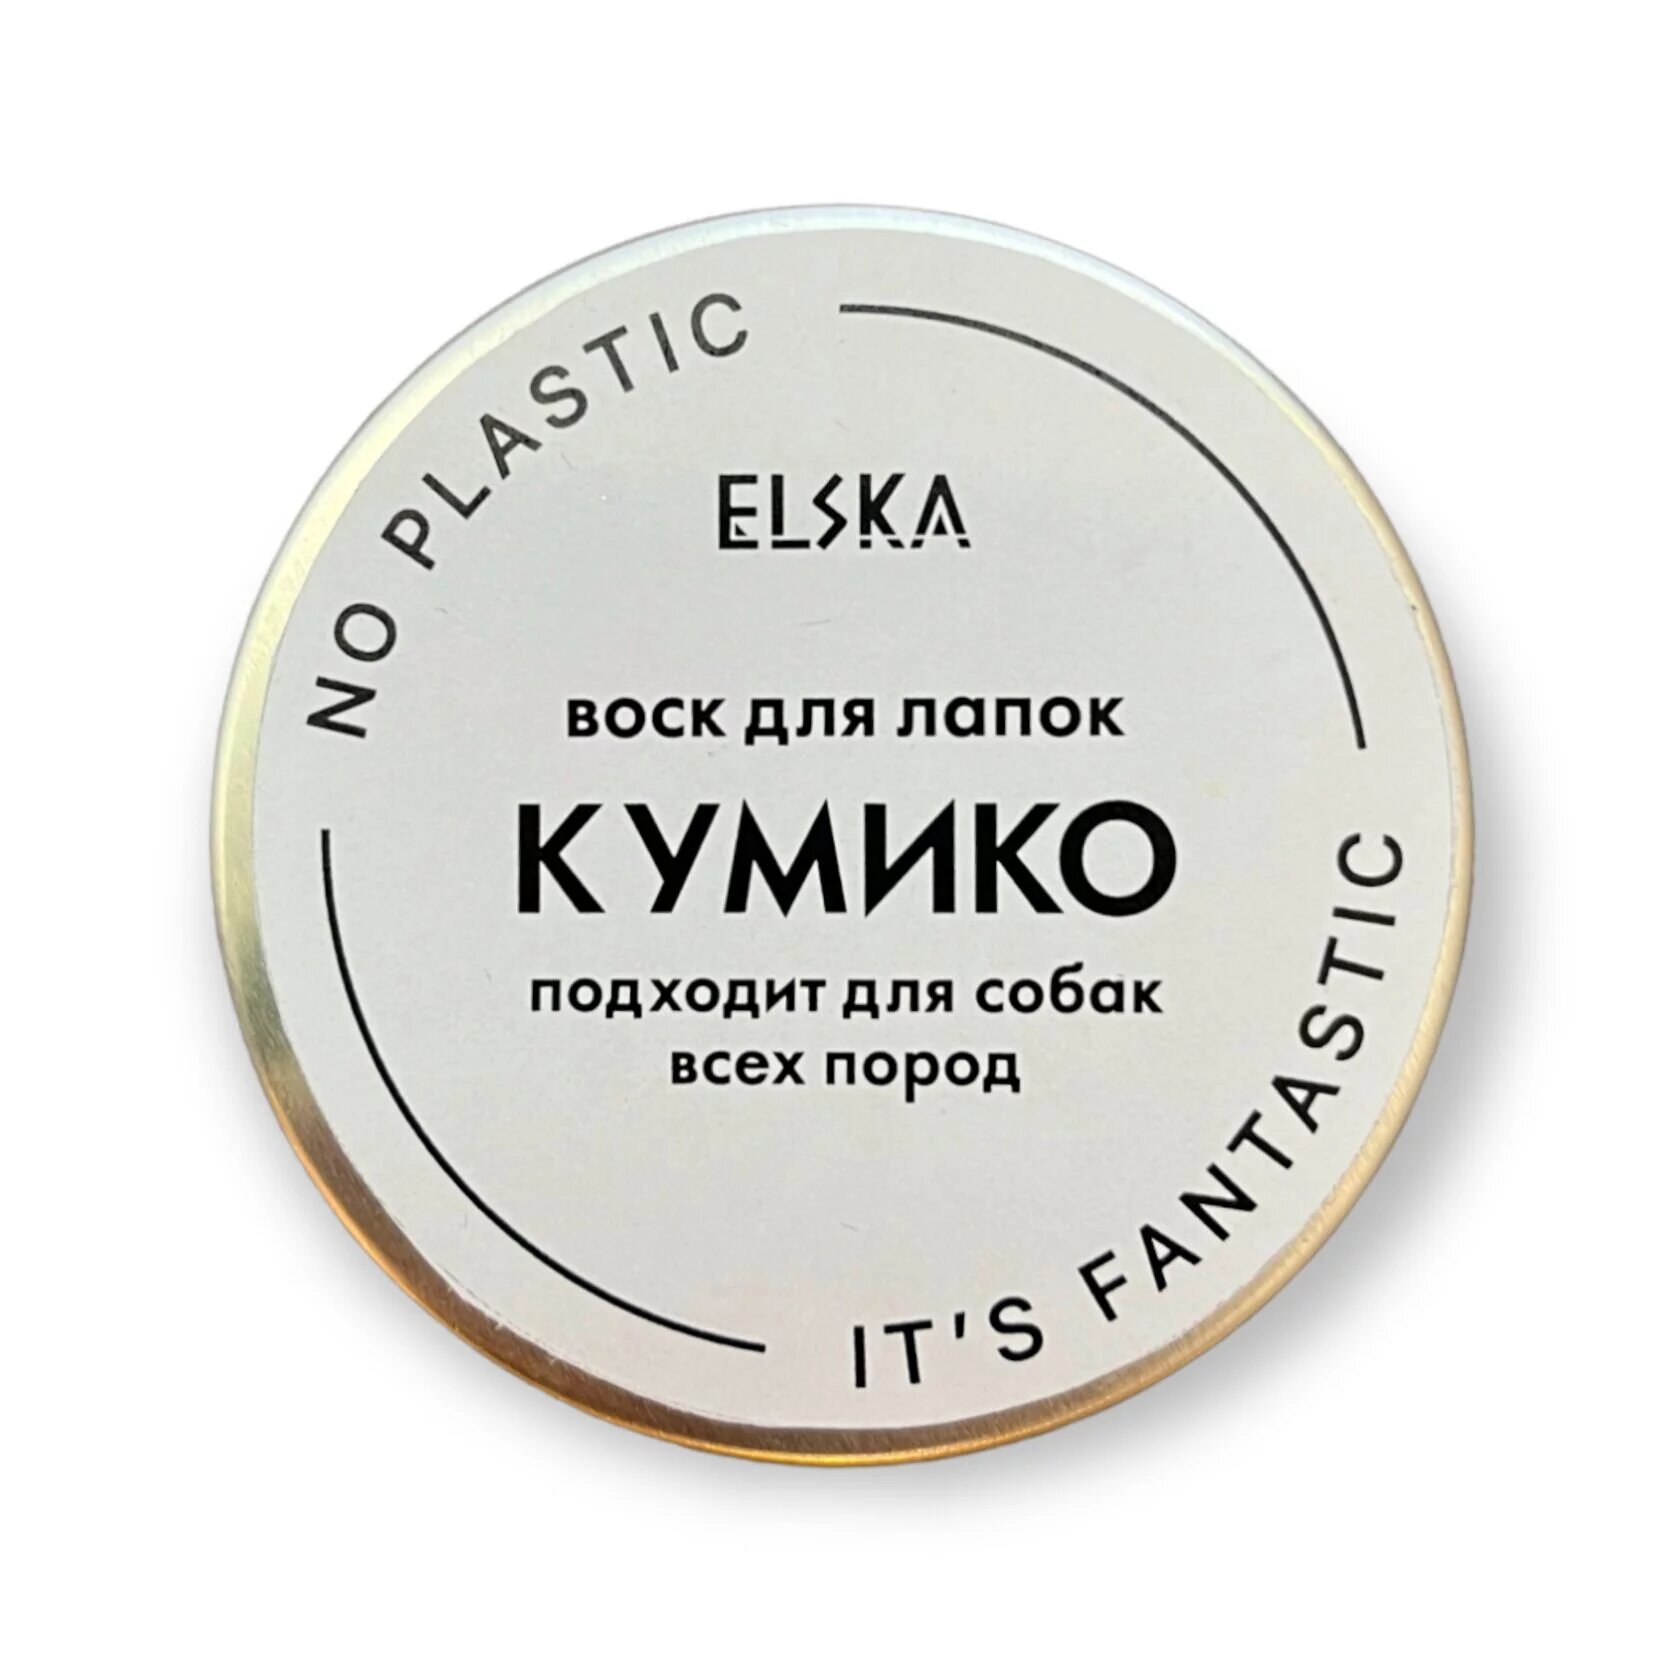 Воск для лапок «Кумико» от Noplasticitsfantastic x Elska,30 мл - фотография № 1